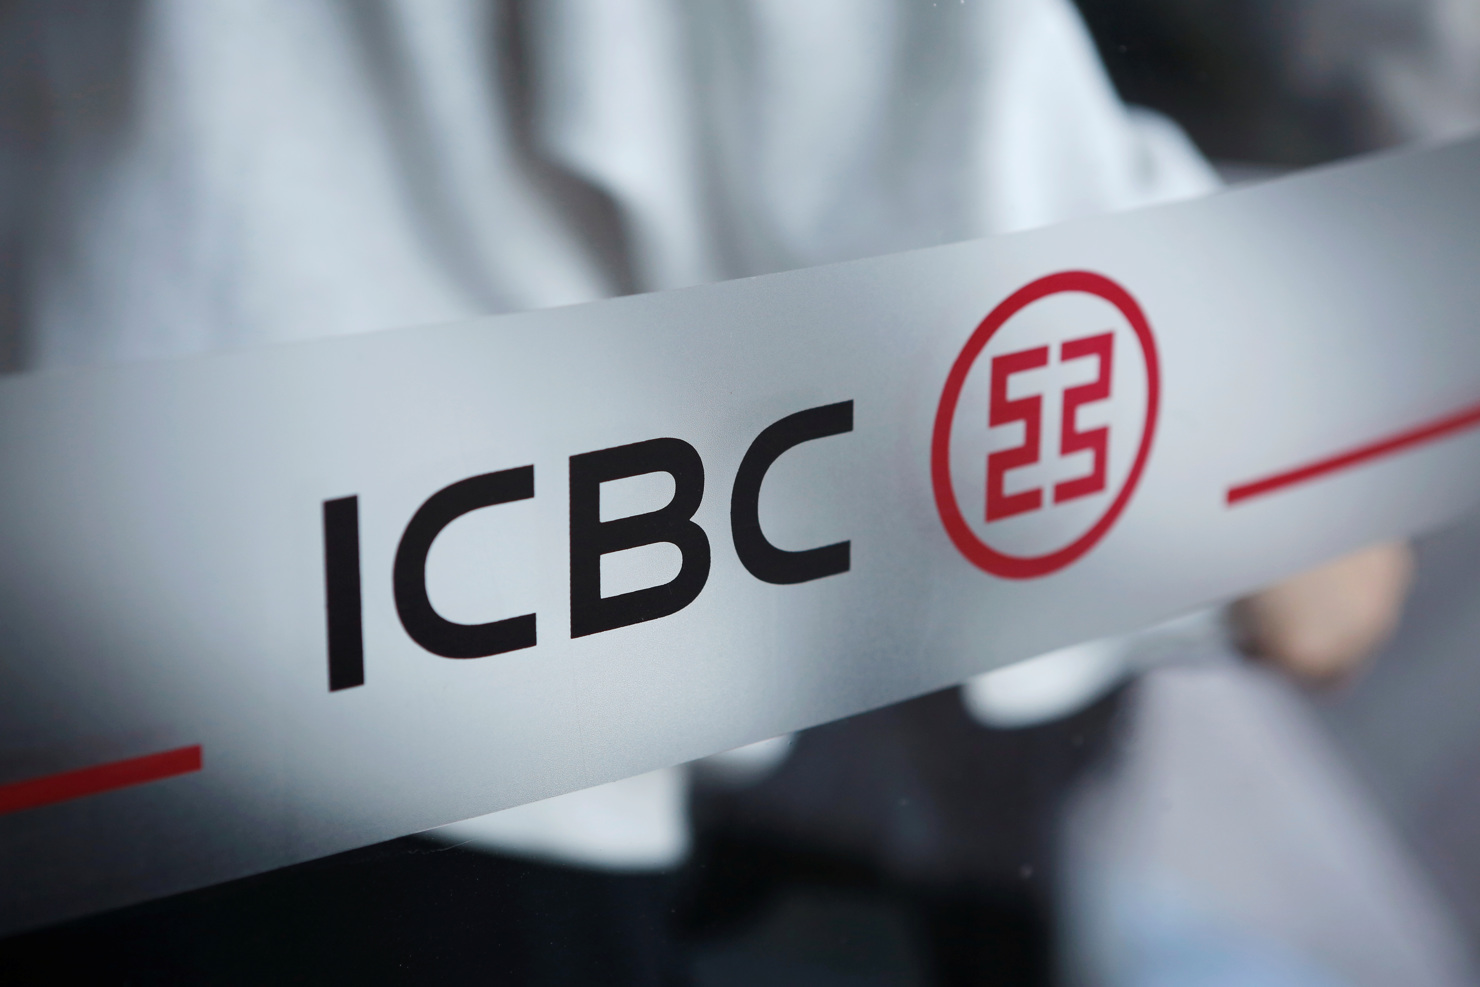 Ngân hàng ICBC thông báo chi nhánh dịch vụ tài chính của họ tại Mỹ vừa bị tấn công ransomware.